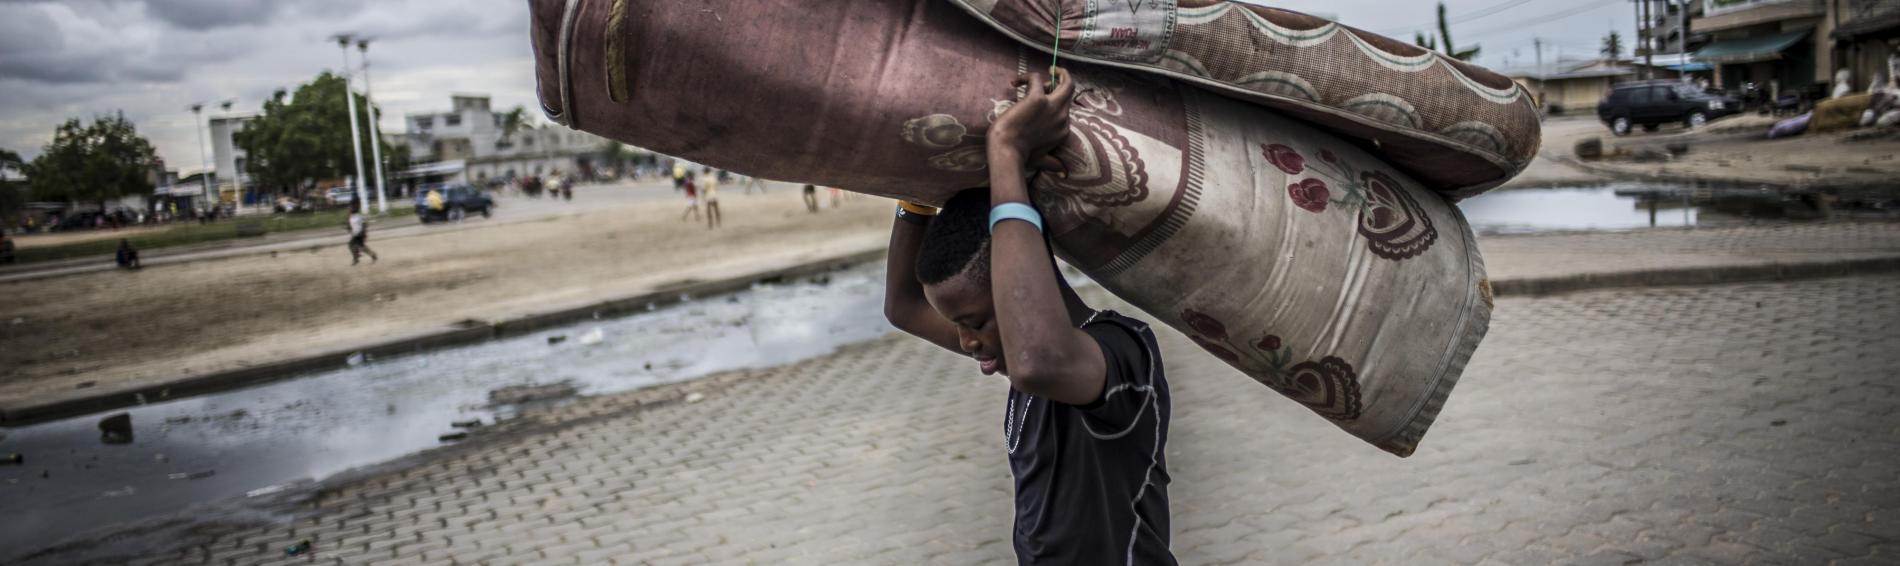 Un enfant dans la rue de Cotonue, la capitale de Benin. Il porte un matelas sur ses épaules.